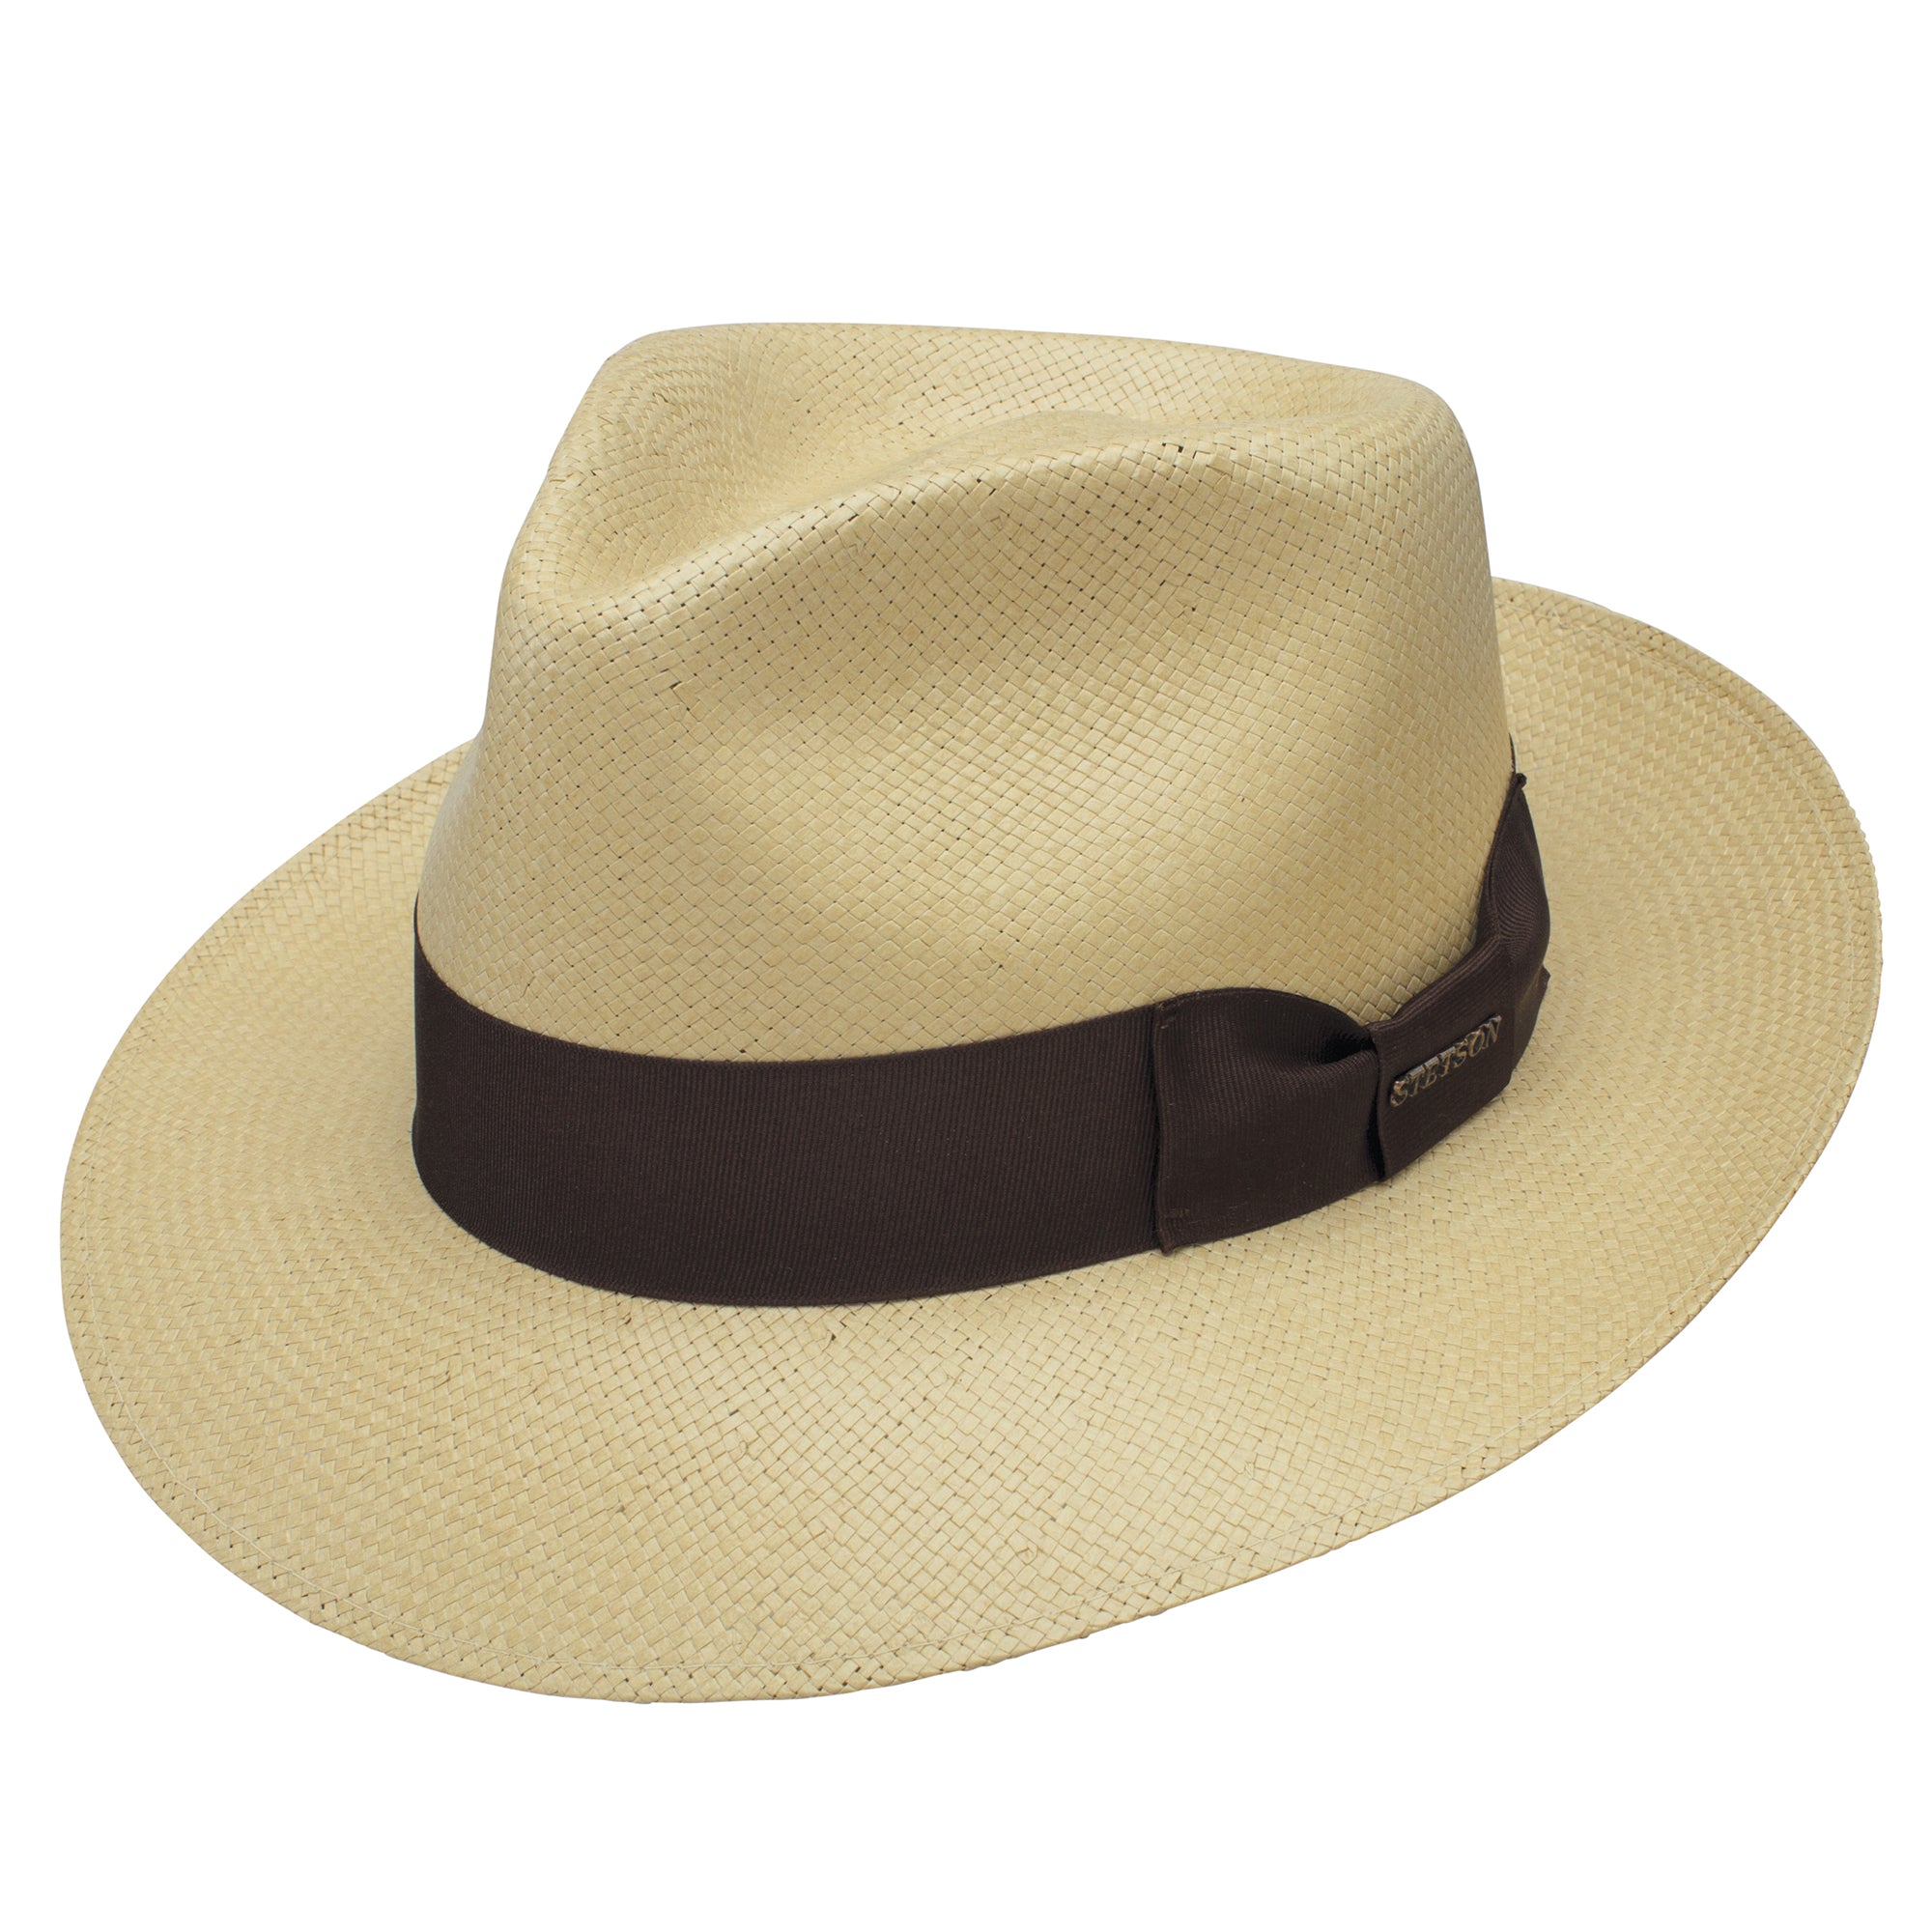 Stetson Adventurer Shantung Straw Hat in Butterscotch